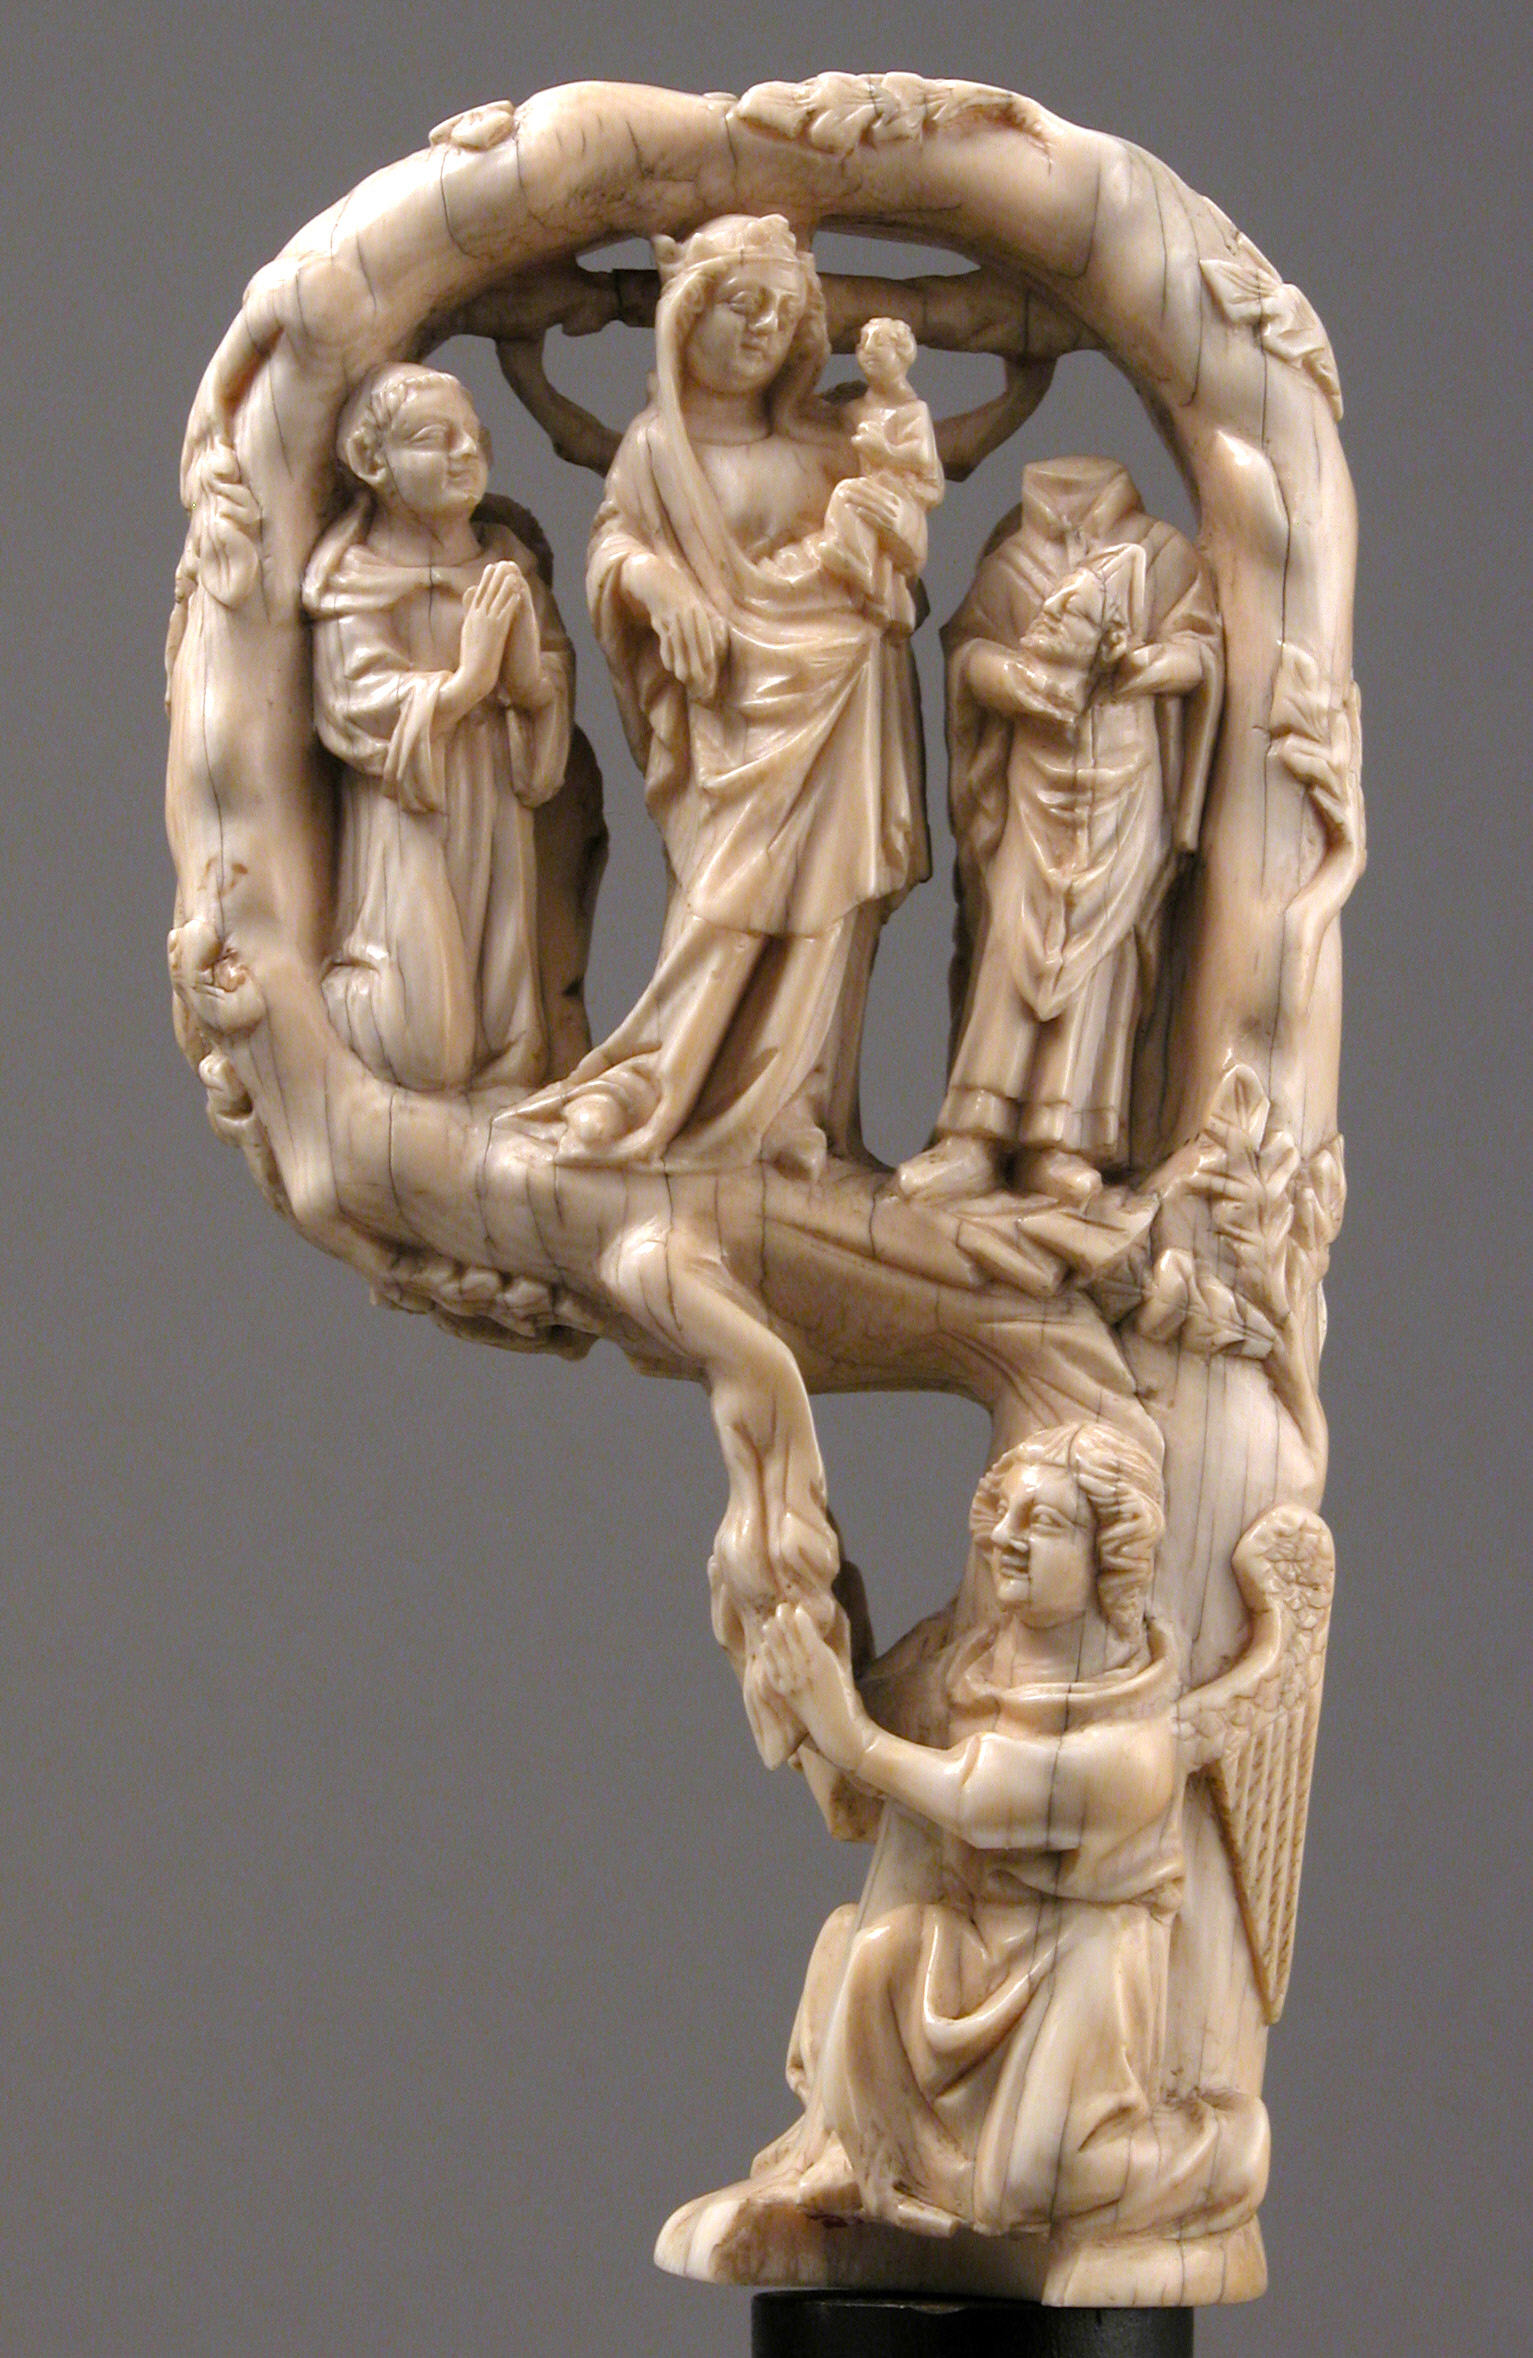 主教的權杖頭: 聖母瑪利亞與嬰兒耶穌 by Unknown Artist - 大約1350年 - 14.8 x 8 x 3.8 公分 